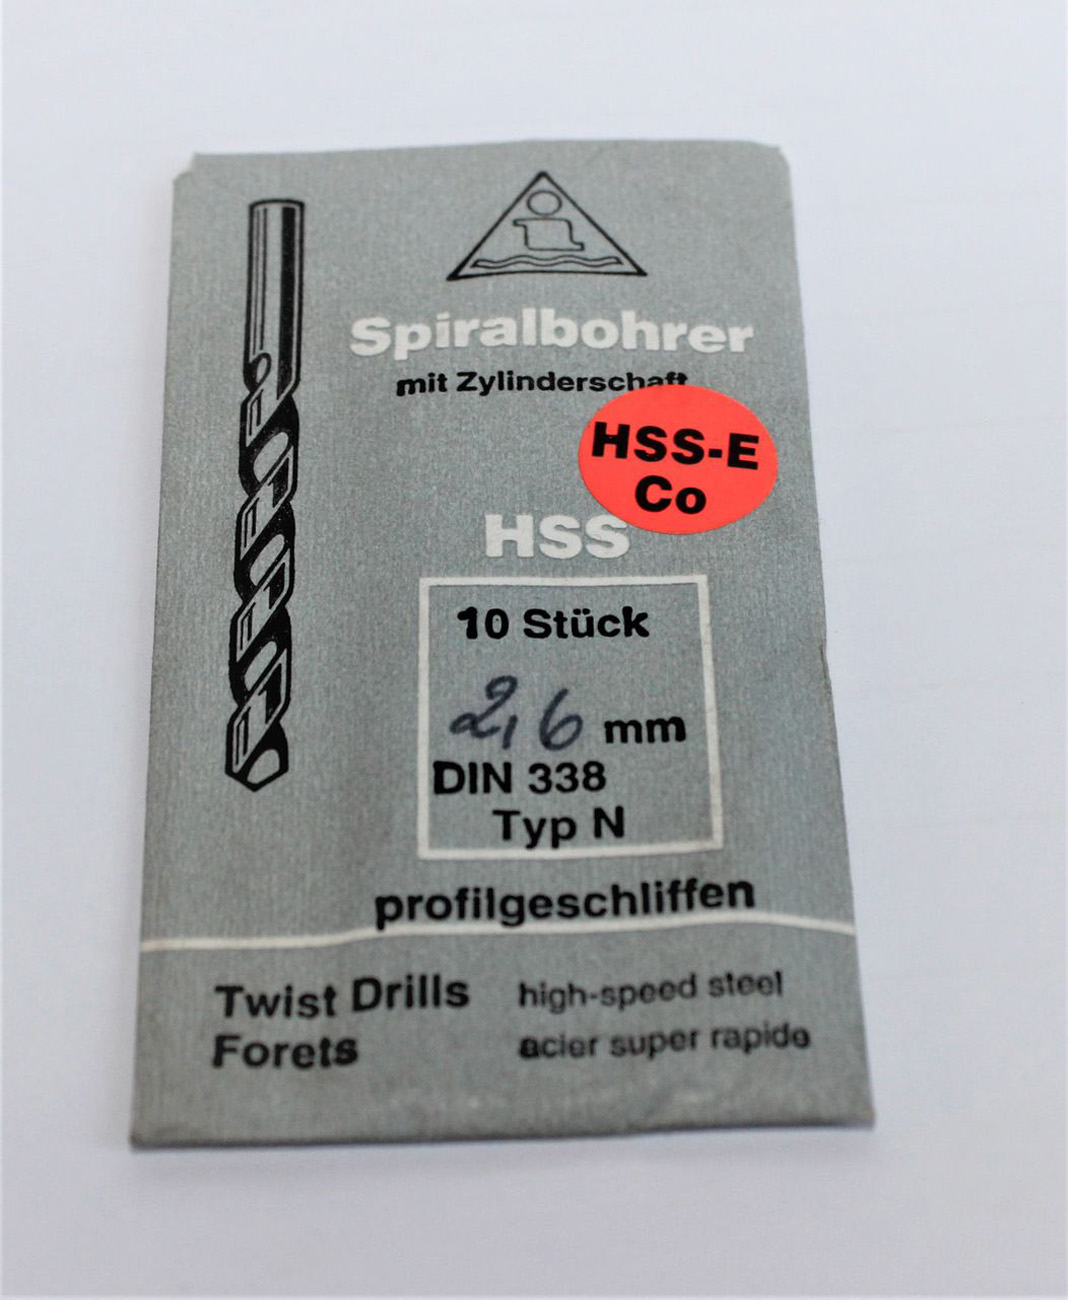 10 x HSS-E Spiralbohrer Zylinderschaft 2,6 mm DIN 338 Typ N profilgeschliffen